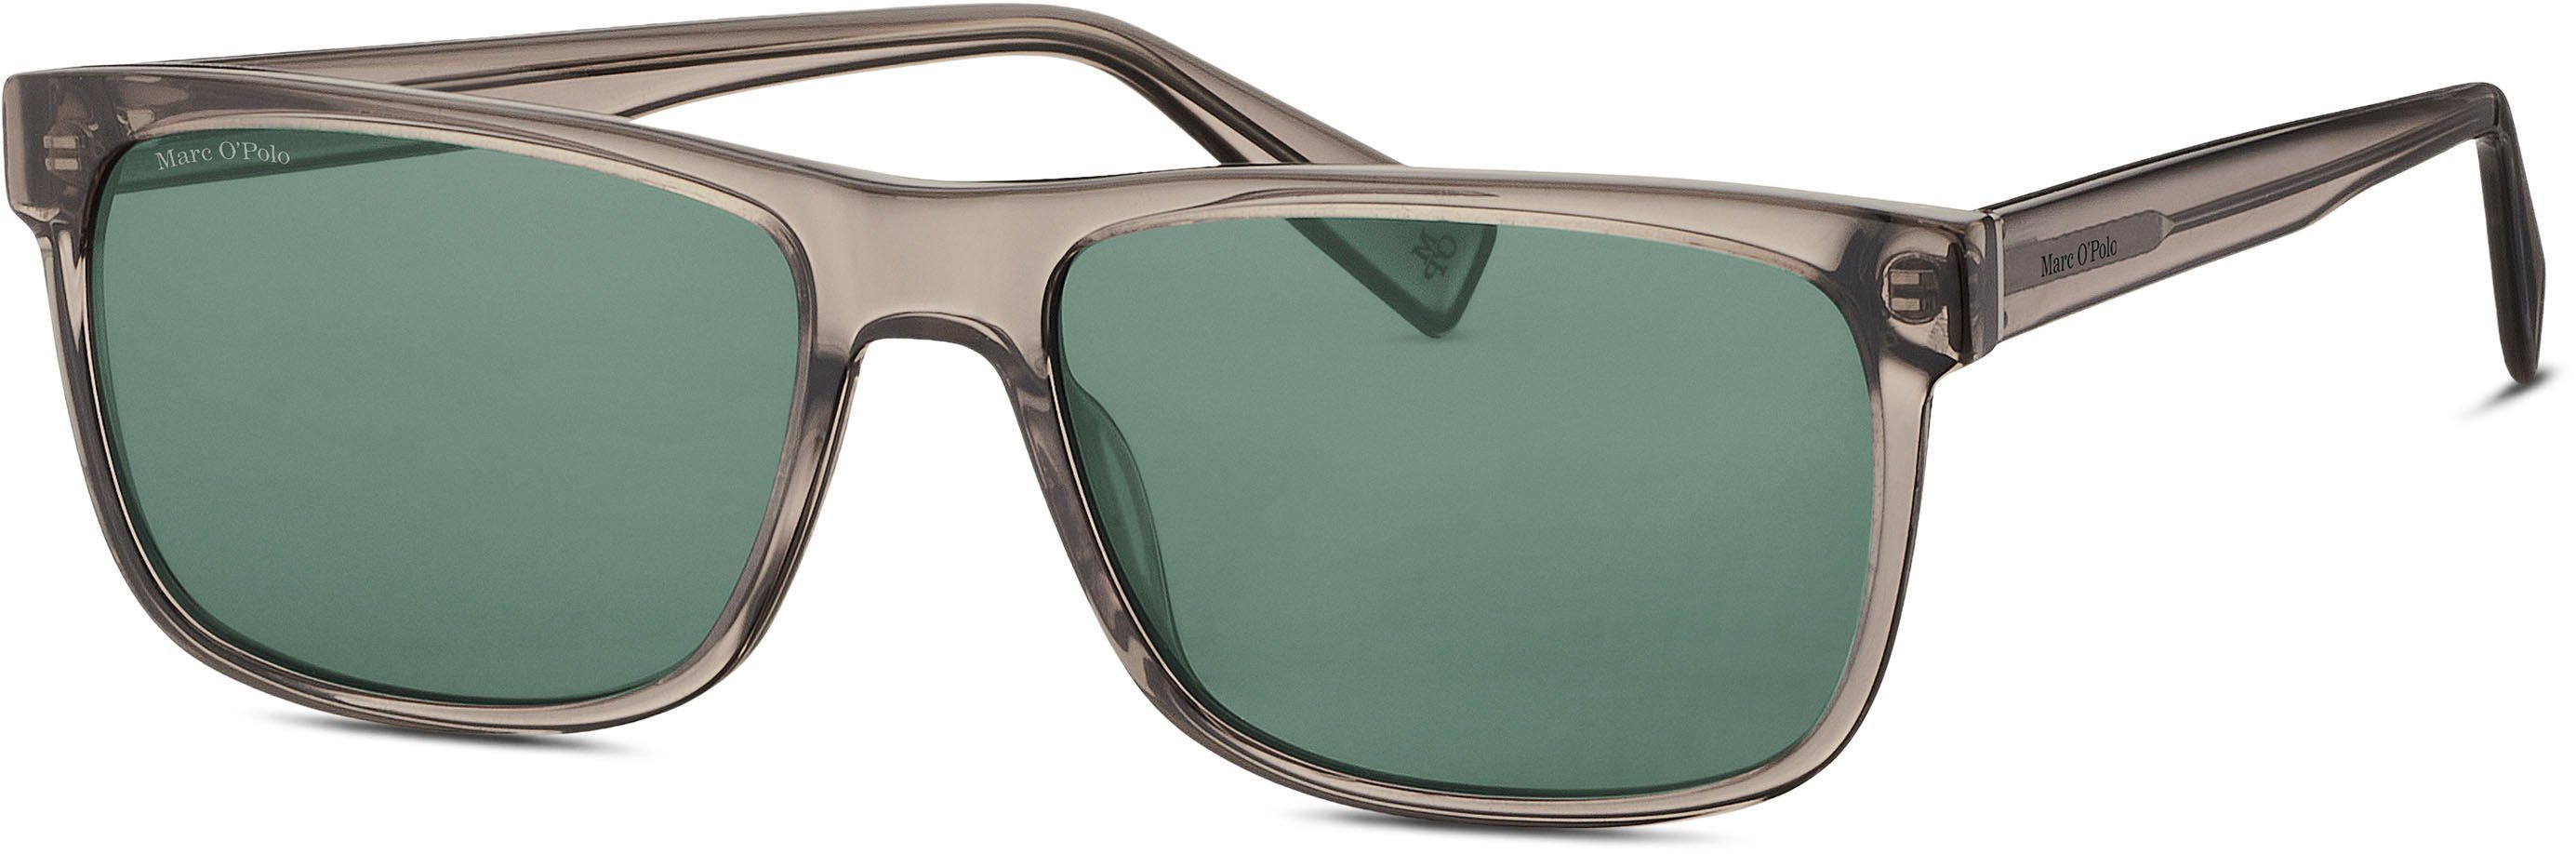 Sonnenbrille Modell Marc 506192 O'Polo